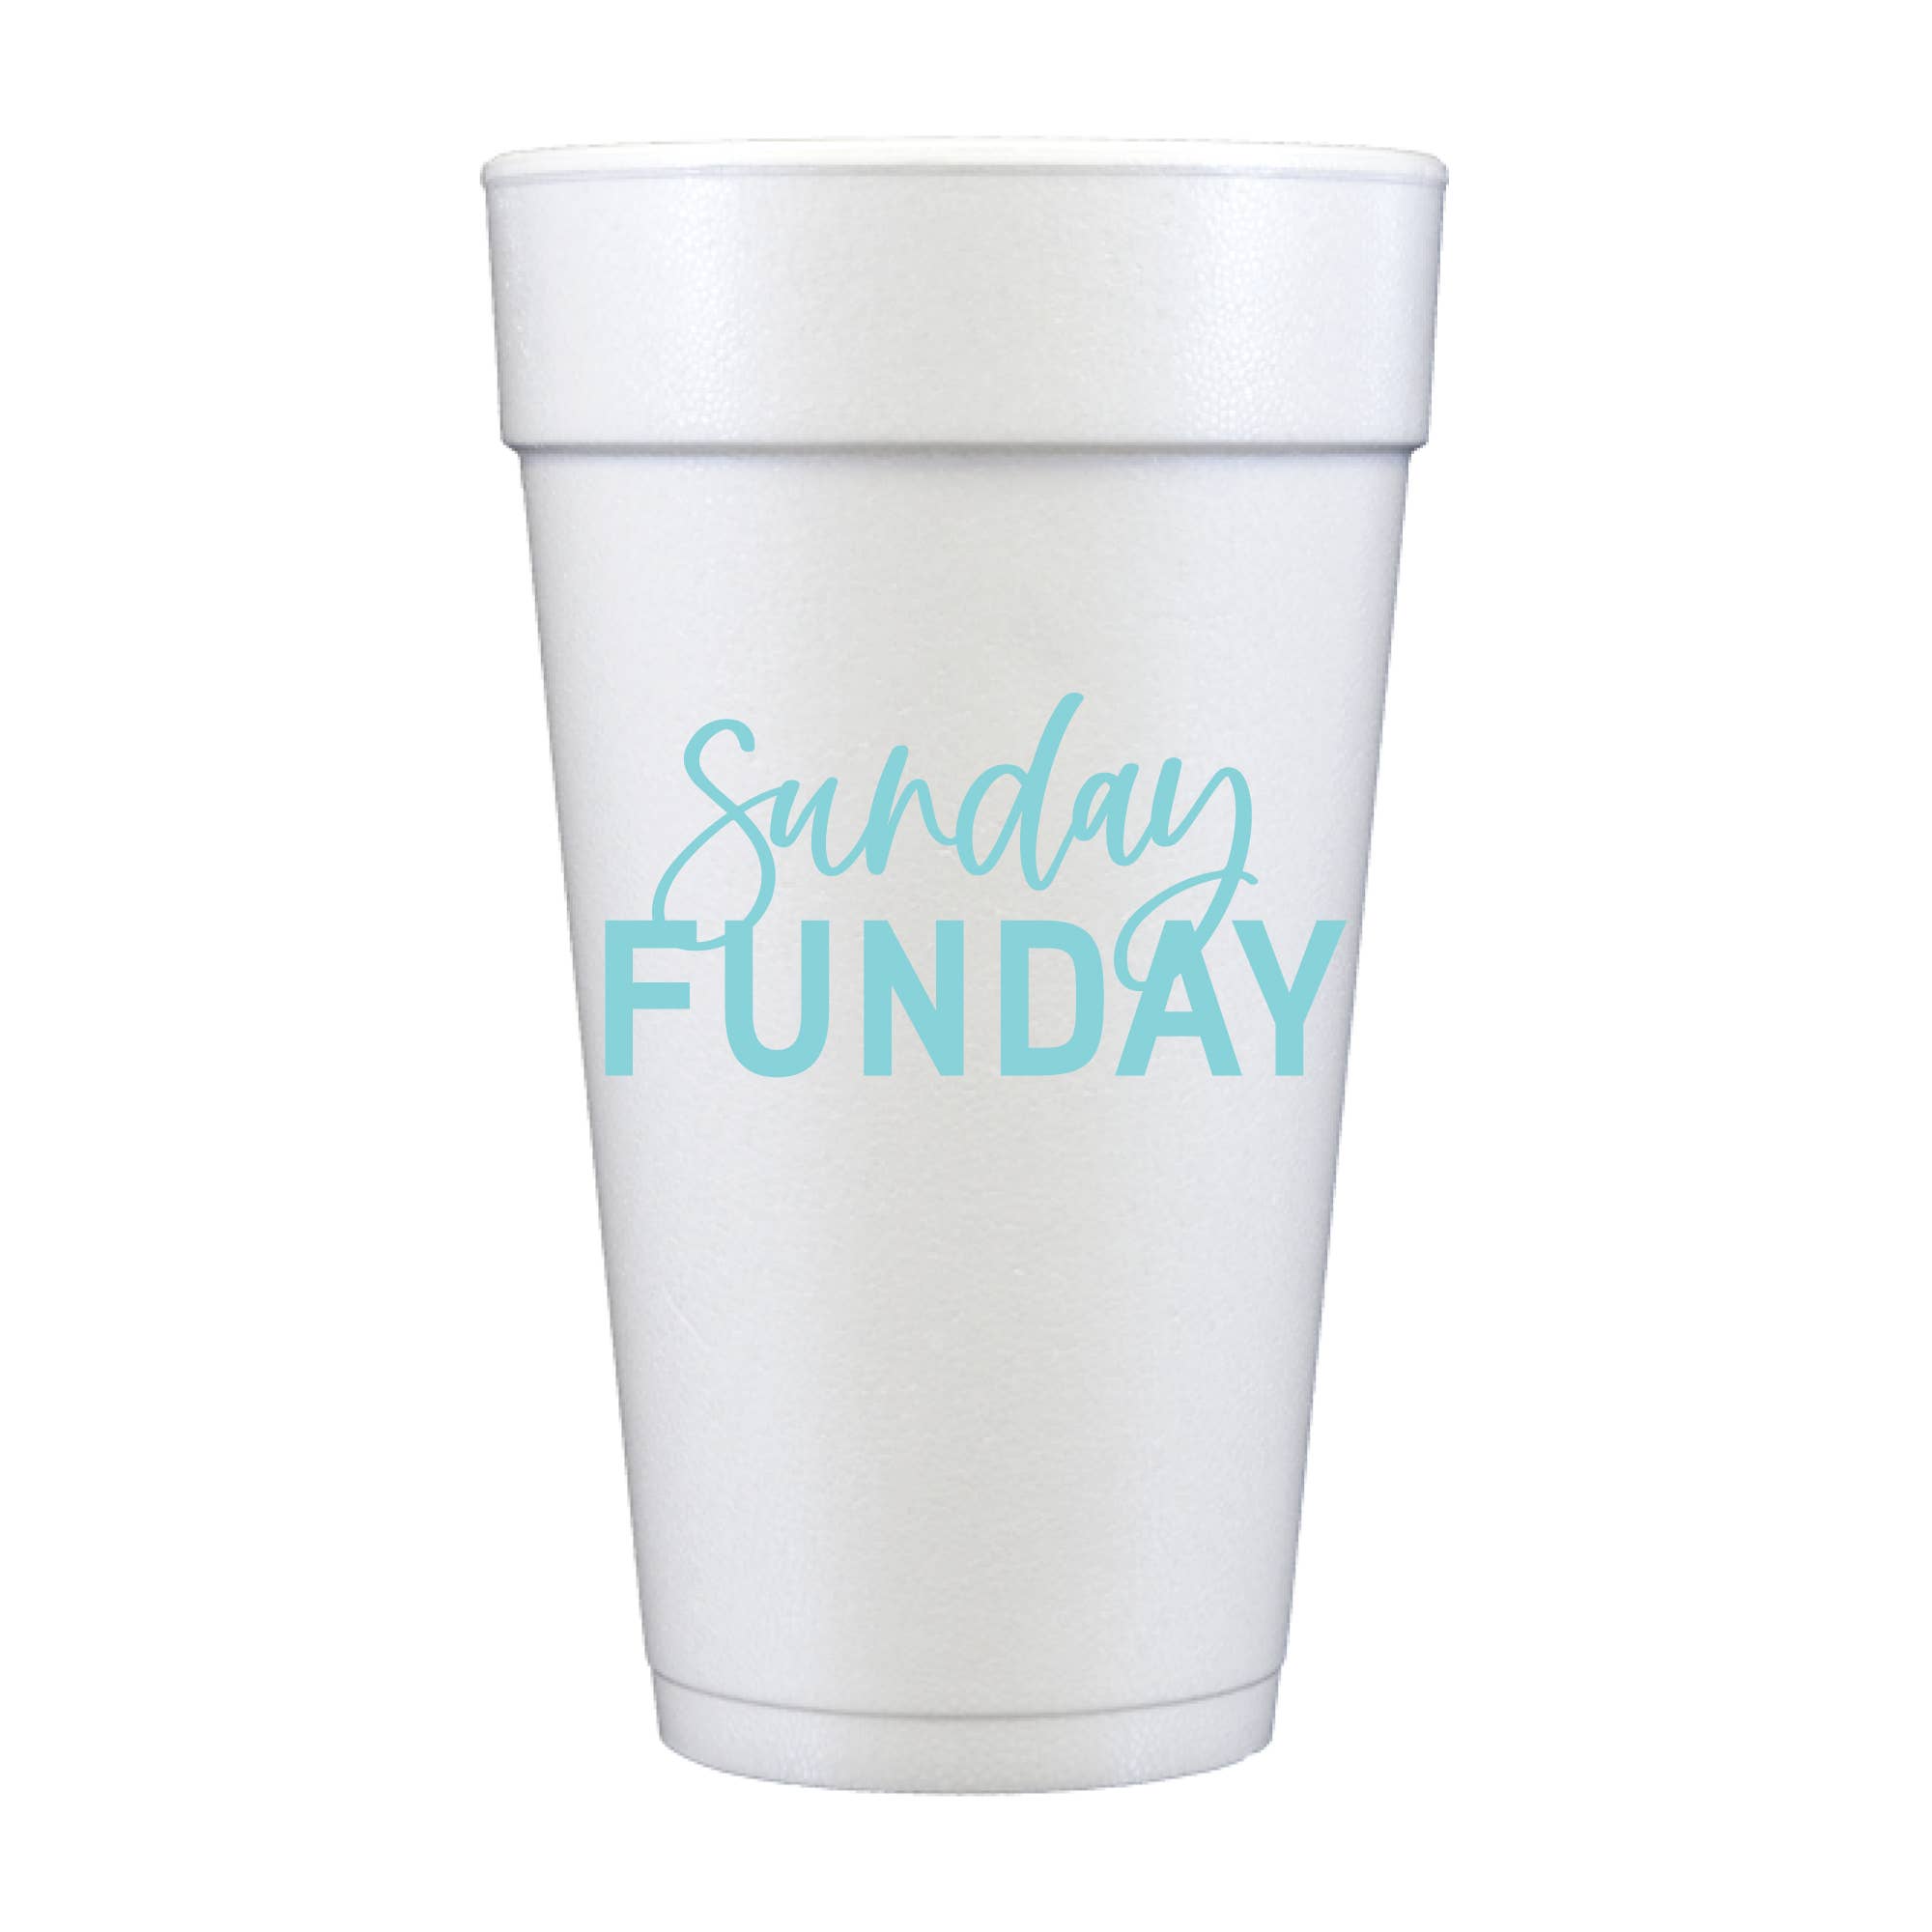 Sunday Funday Foam Cups